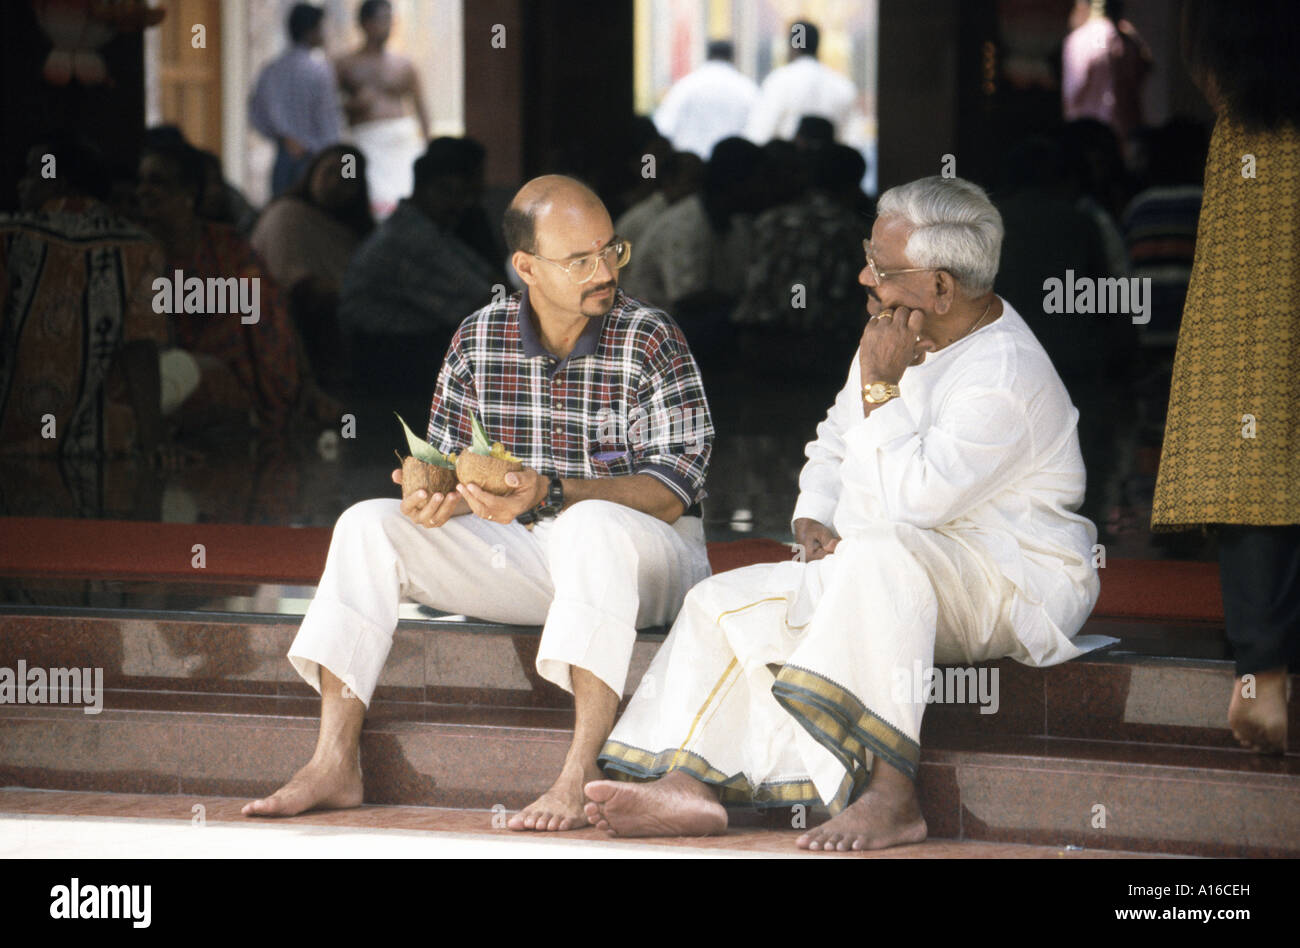 Two Hindu men sit chatting in the Sri Mariamman Hindu temple in Chinatown Kuala Lumpur Malaysia Stock Photo